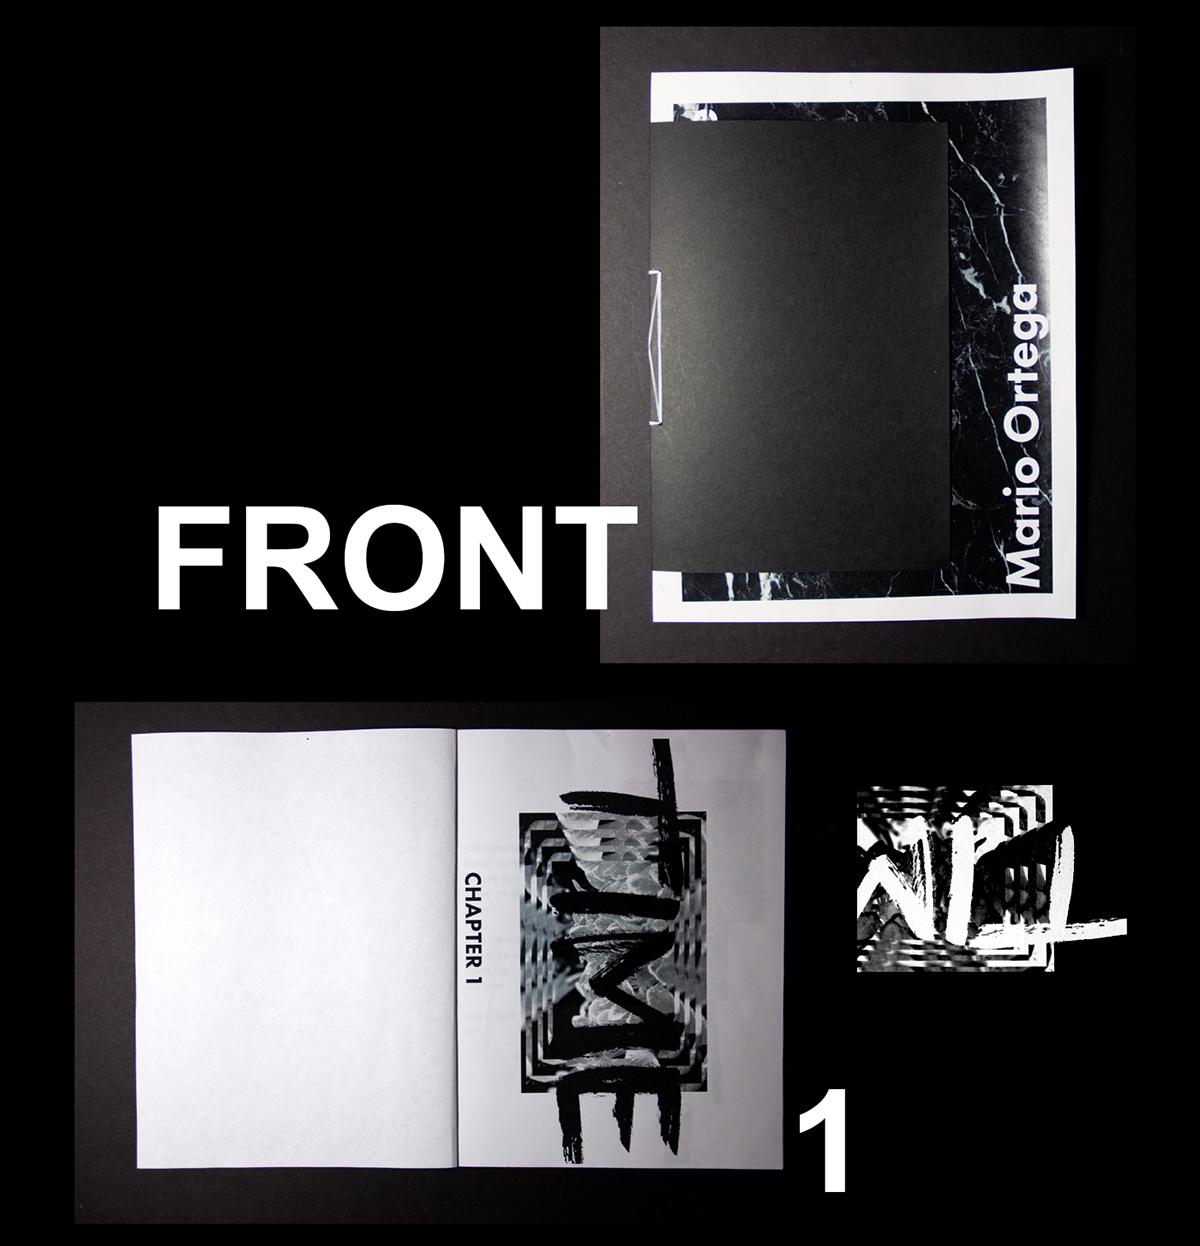 Booklet print black & white b&w